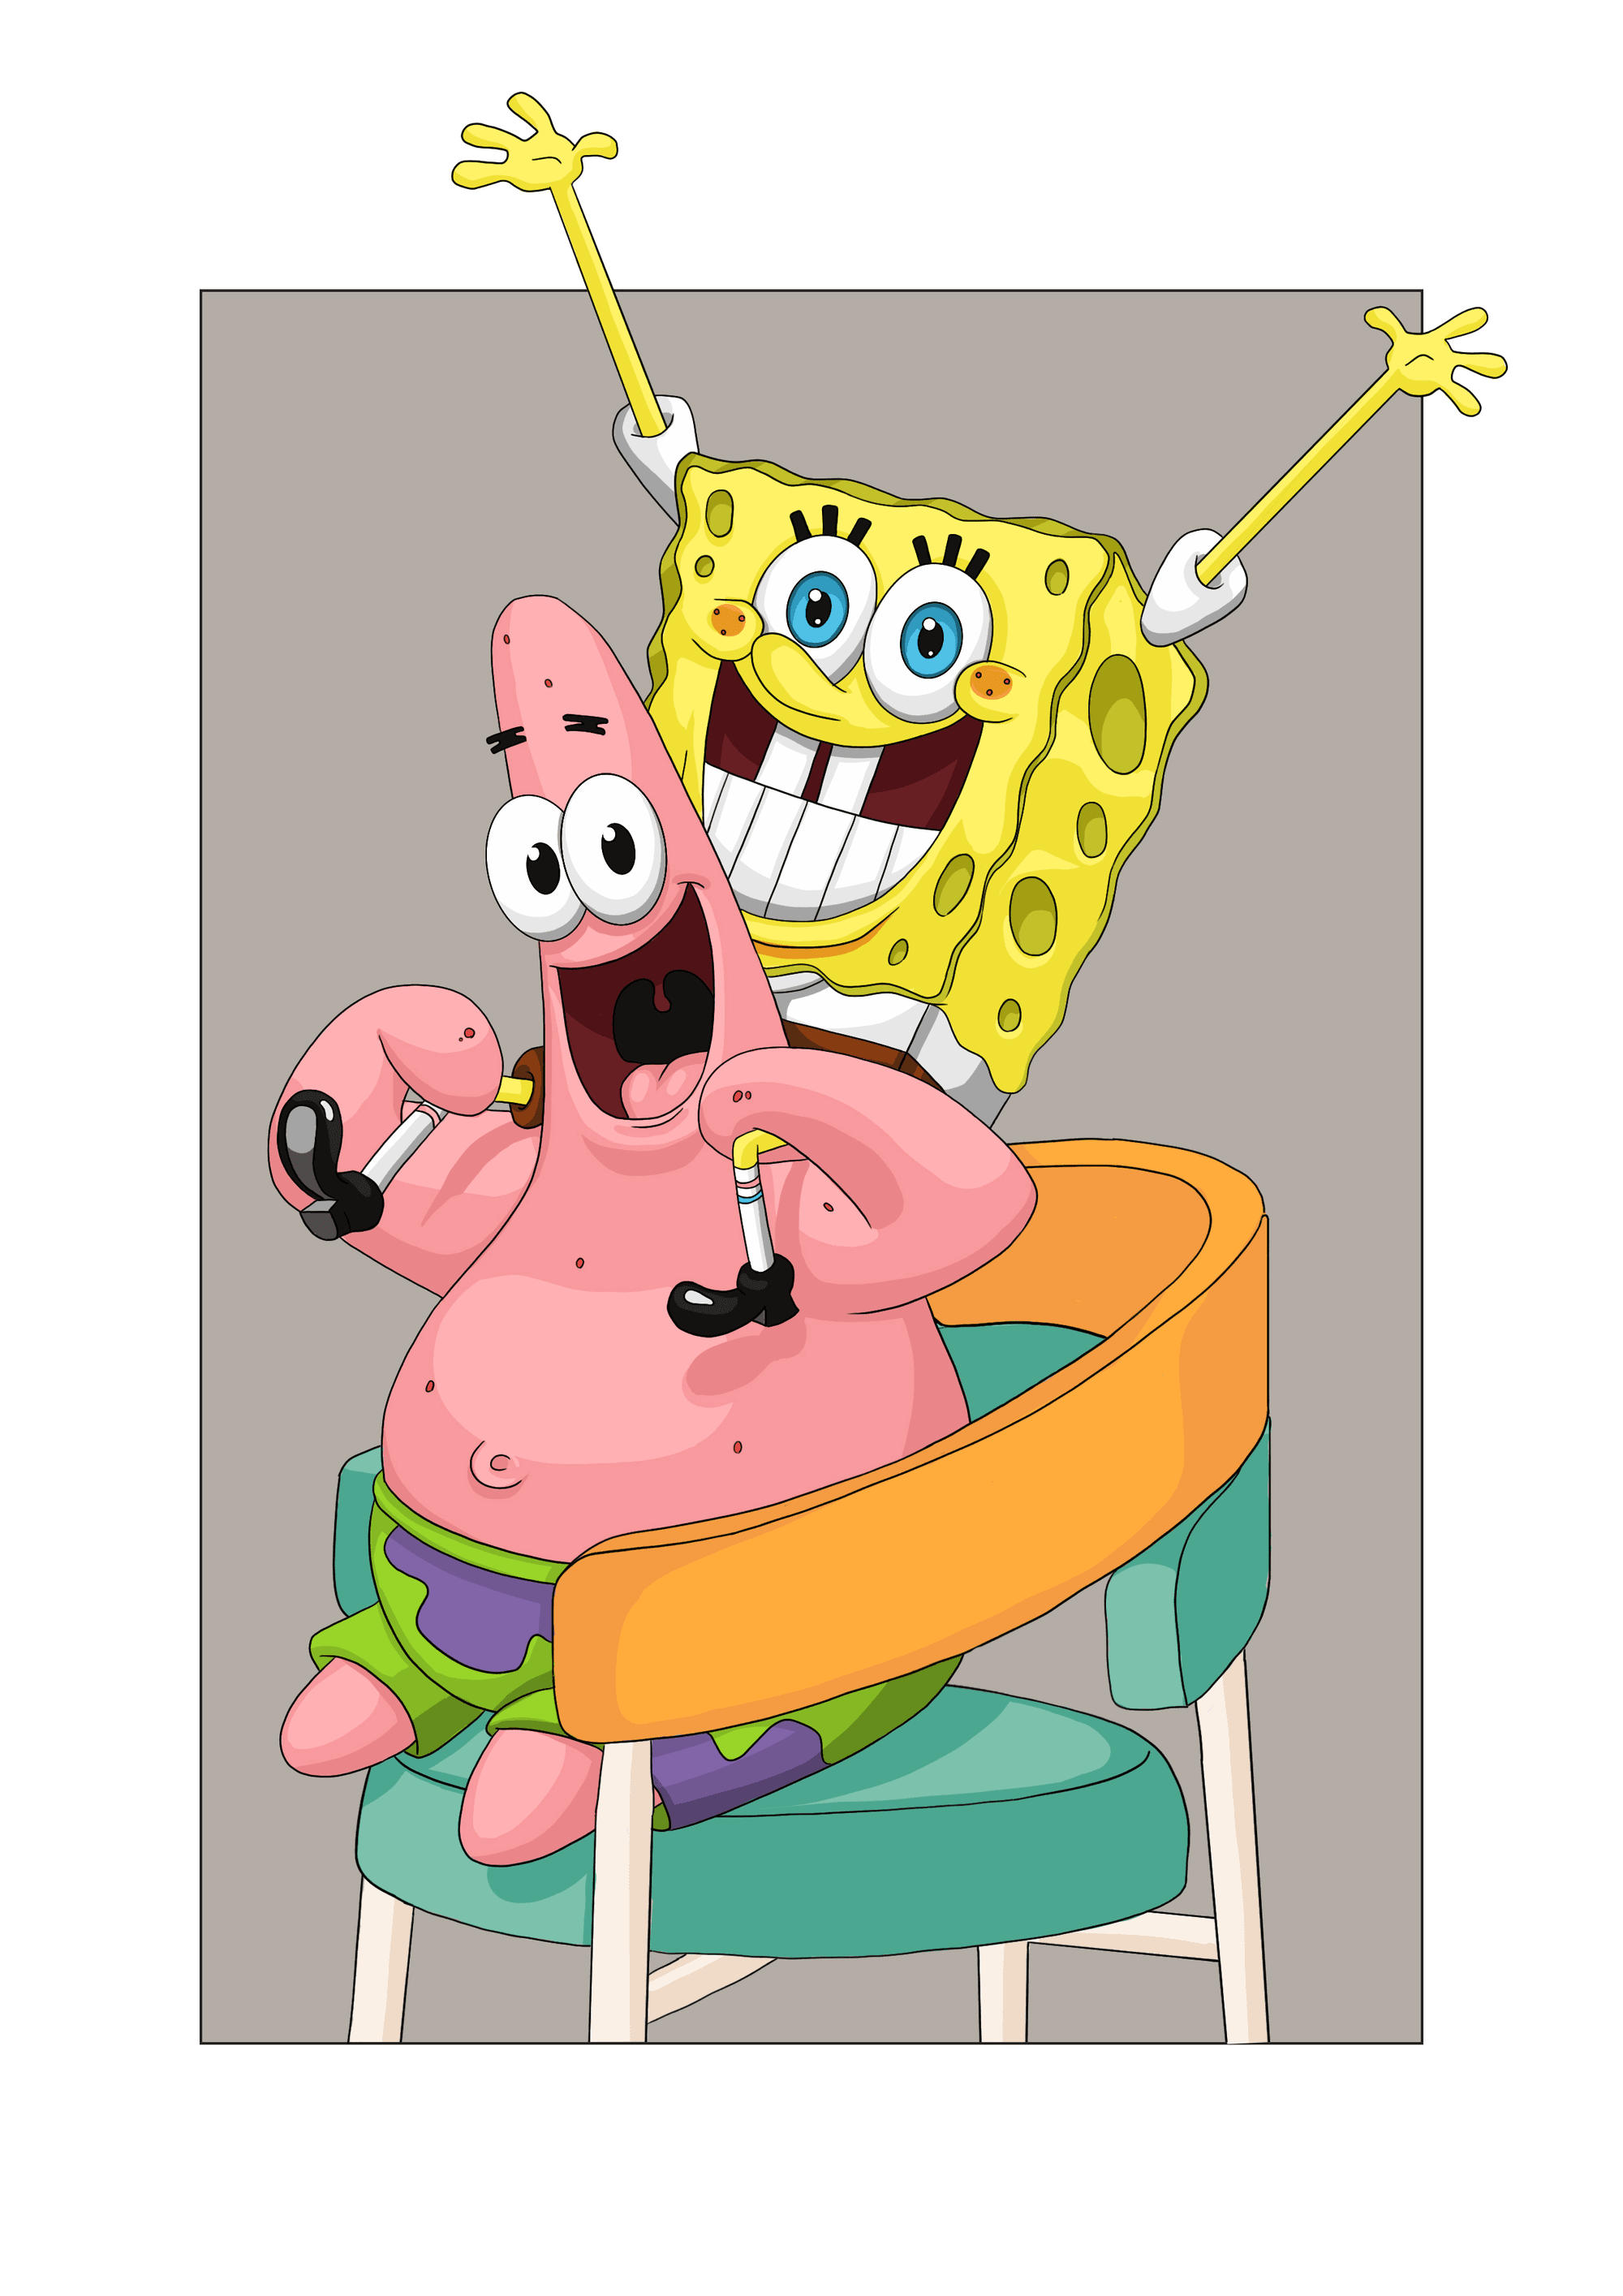 spongebob and patrick hugging